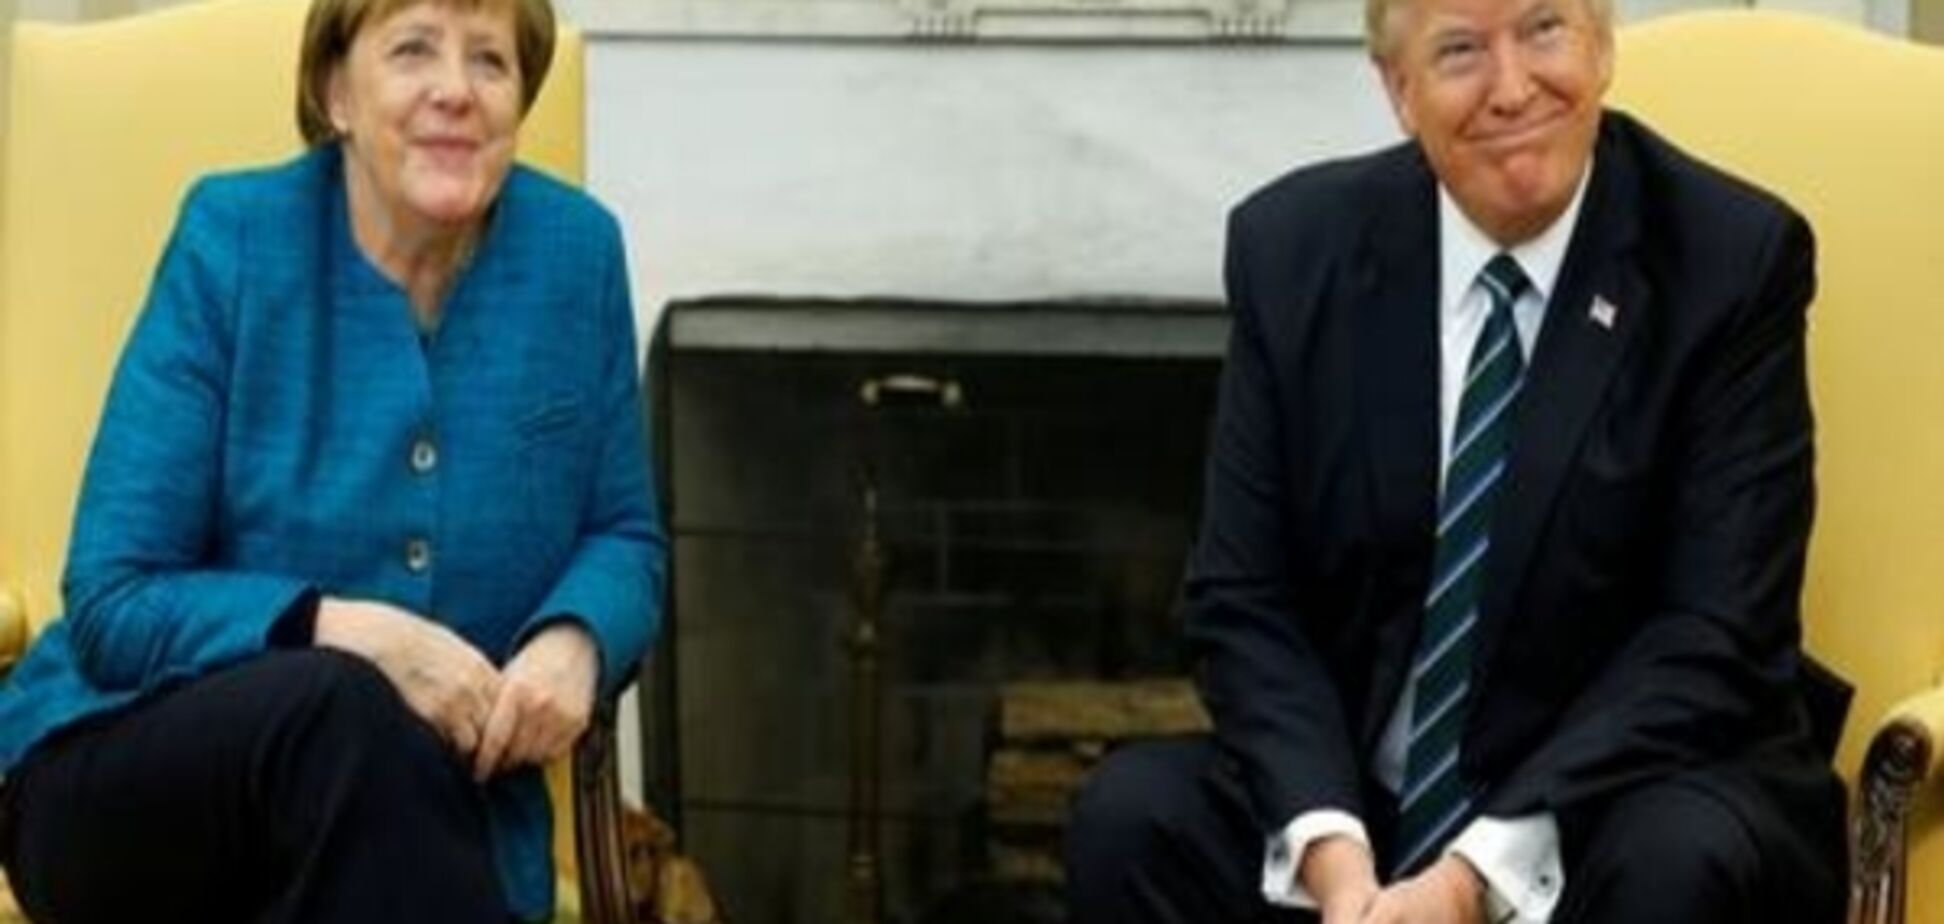 Коментар: Незграбний Трамп і впевнена в собі Меркель